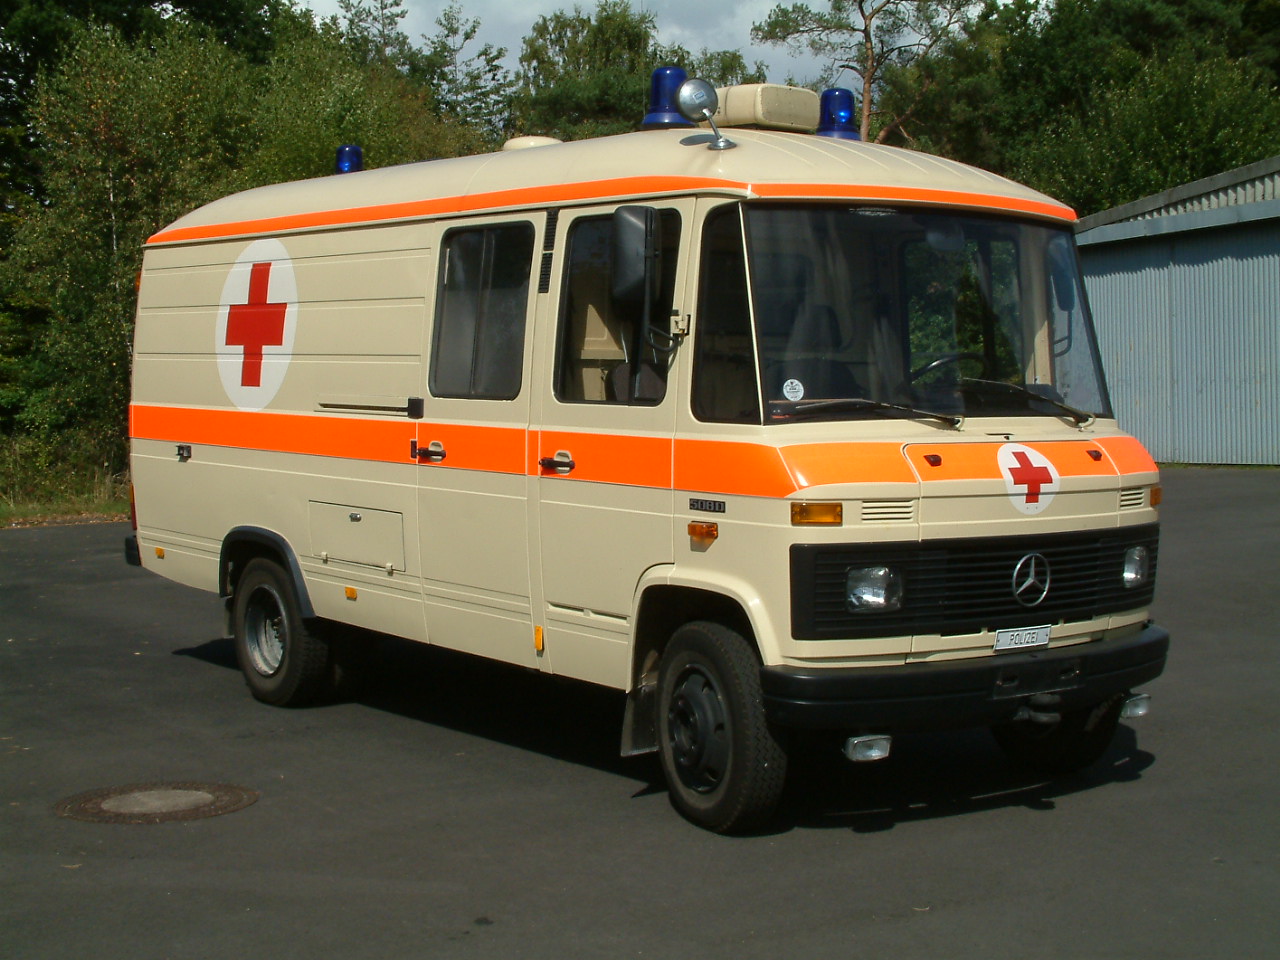 Polizei-Rettungswagen Mercedes-Benz 508 D aus dem Polizeioldtimer Museum in Marburg